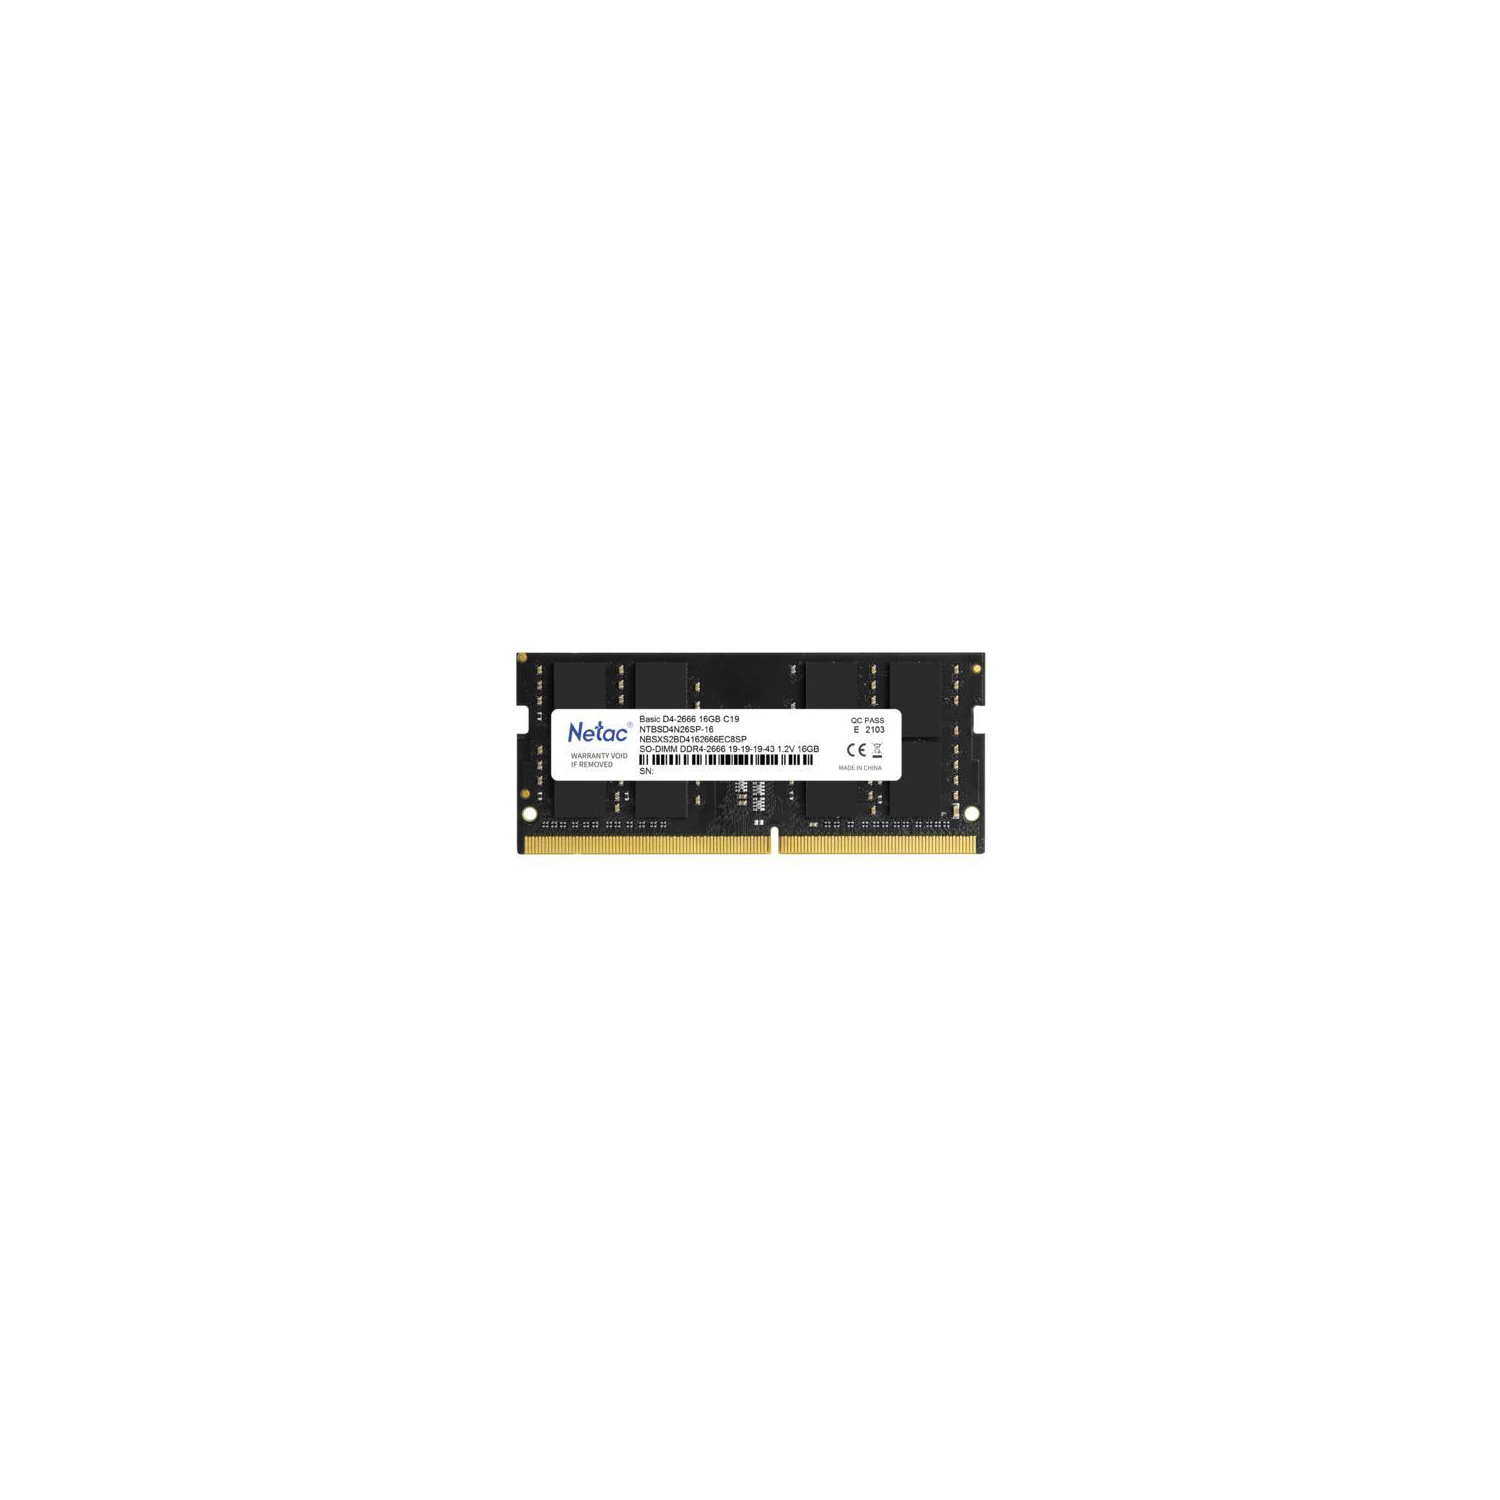 New Netac 16GB DDR4 Ram 2666MHz Laptop Memory Ram PC4-2666 1.2V CL19 260-Pin SO-DIMM